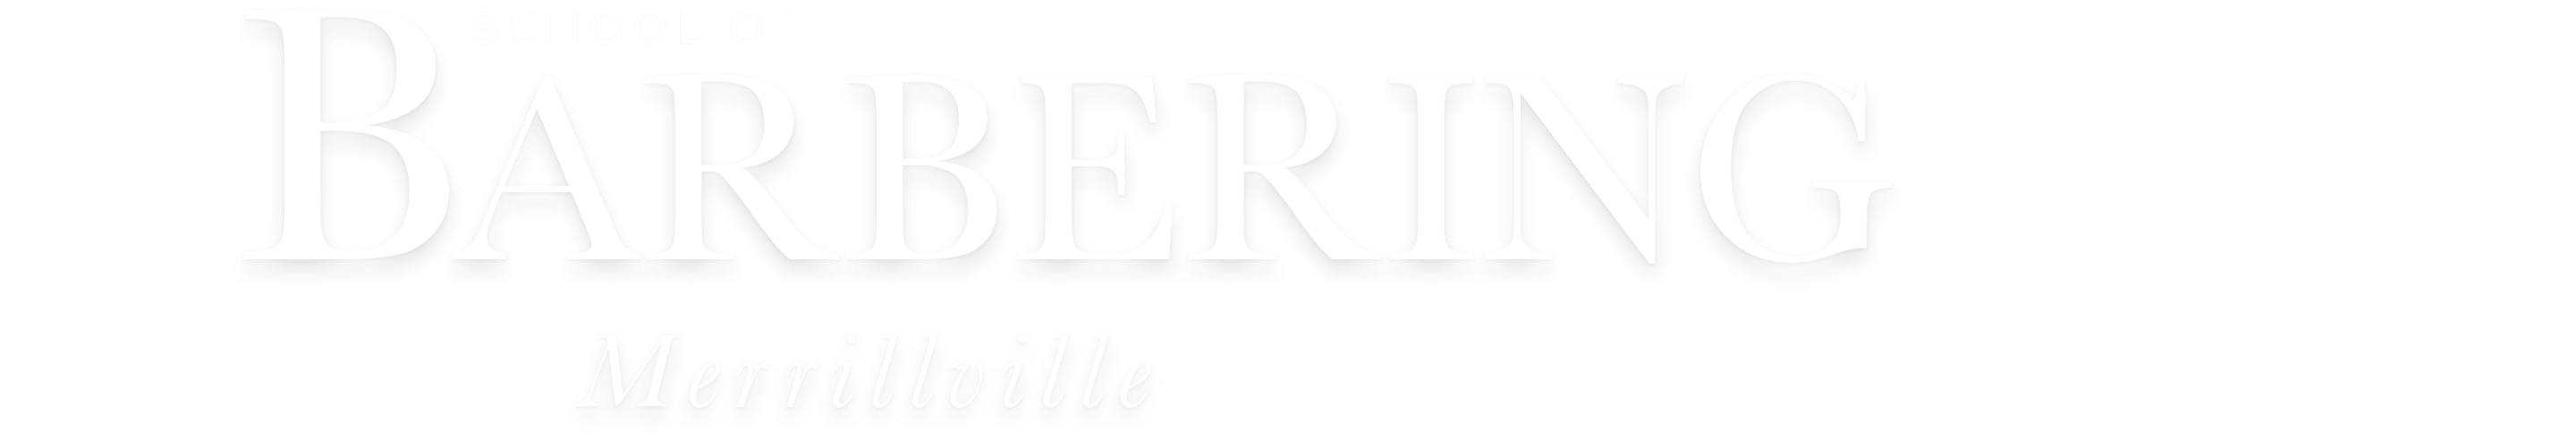 School of Barbering - Merrilville